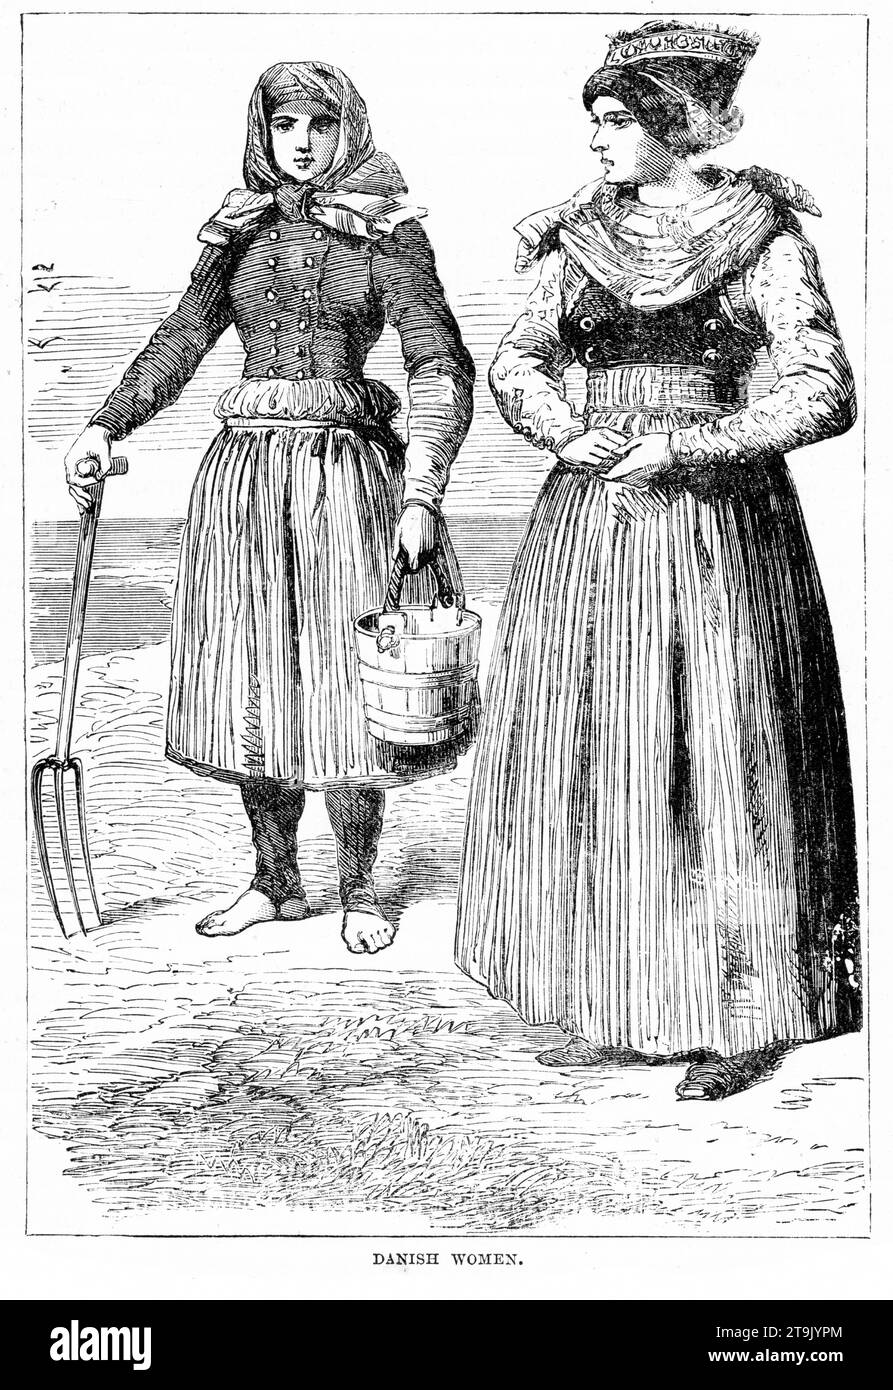 Ritratto inciso di contadine danesi in costumi tradizionali. Pubblicato intorno al 1887 Foto Stock